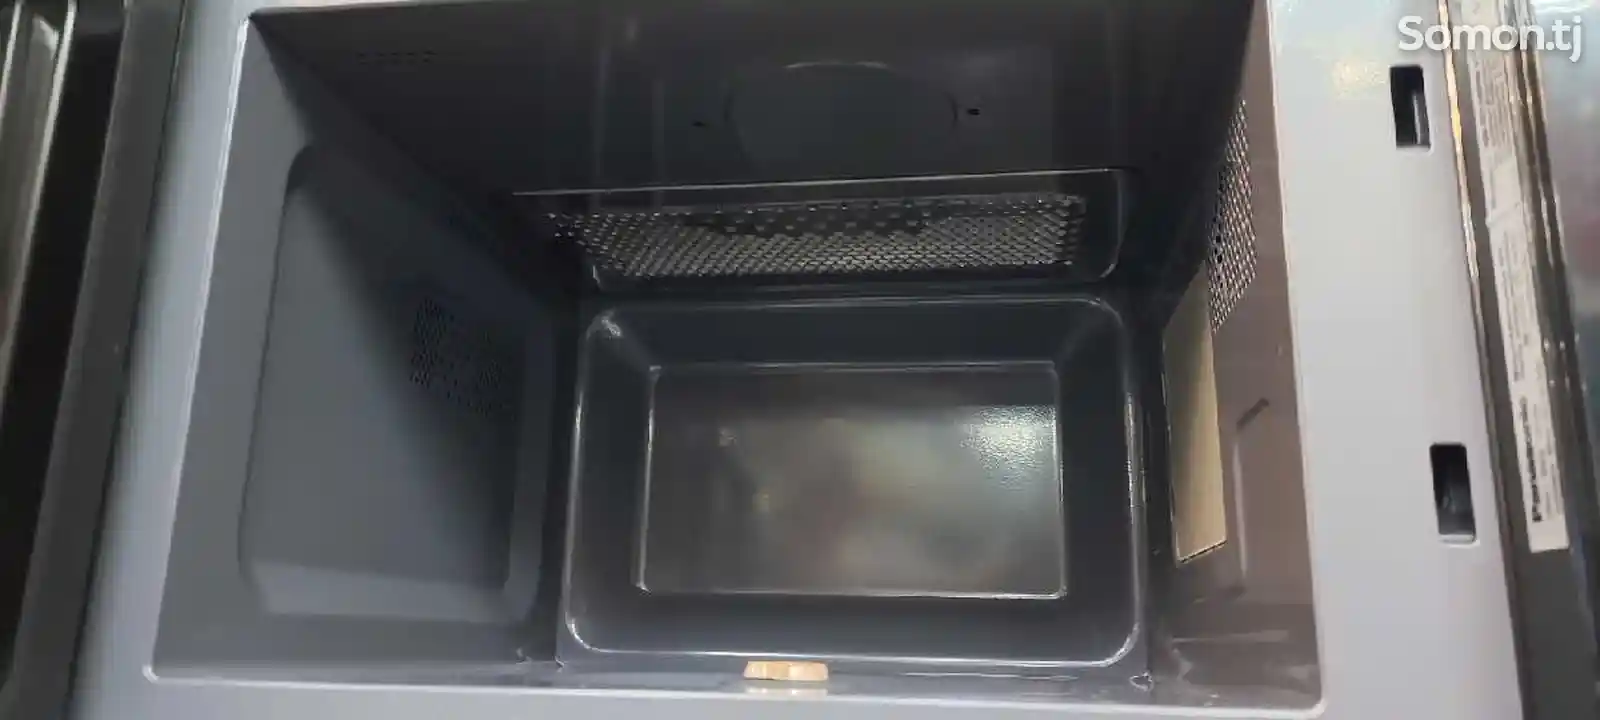 Микроволновая печь Panasonic GT35-2